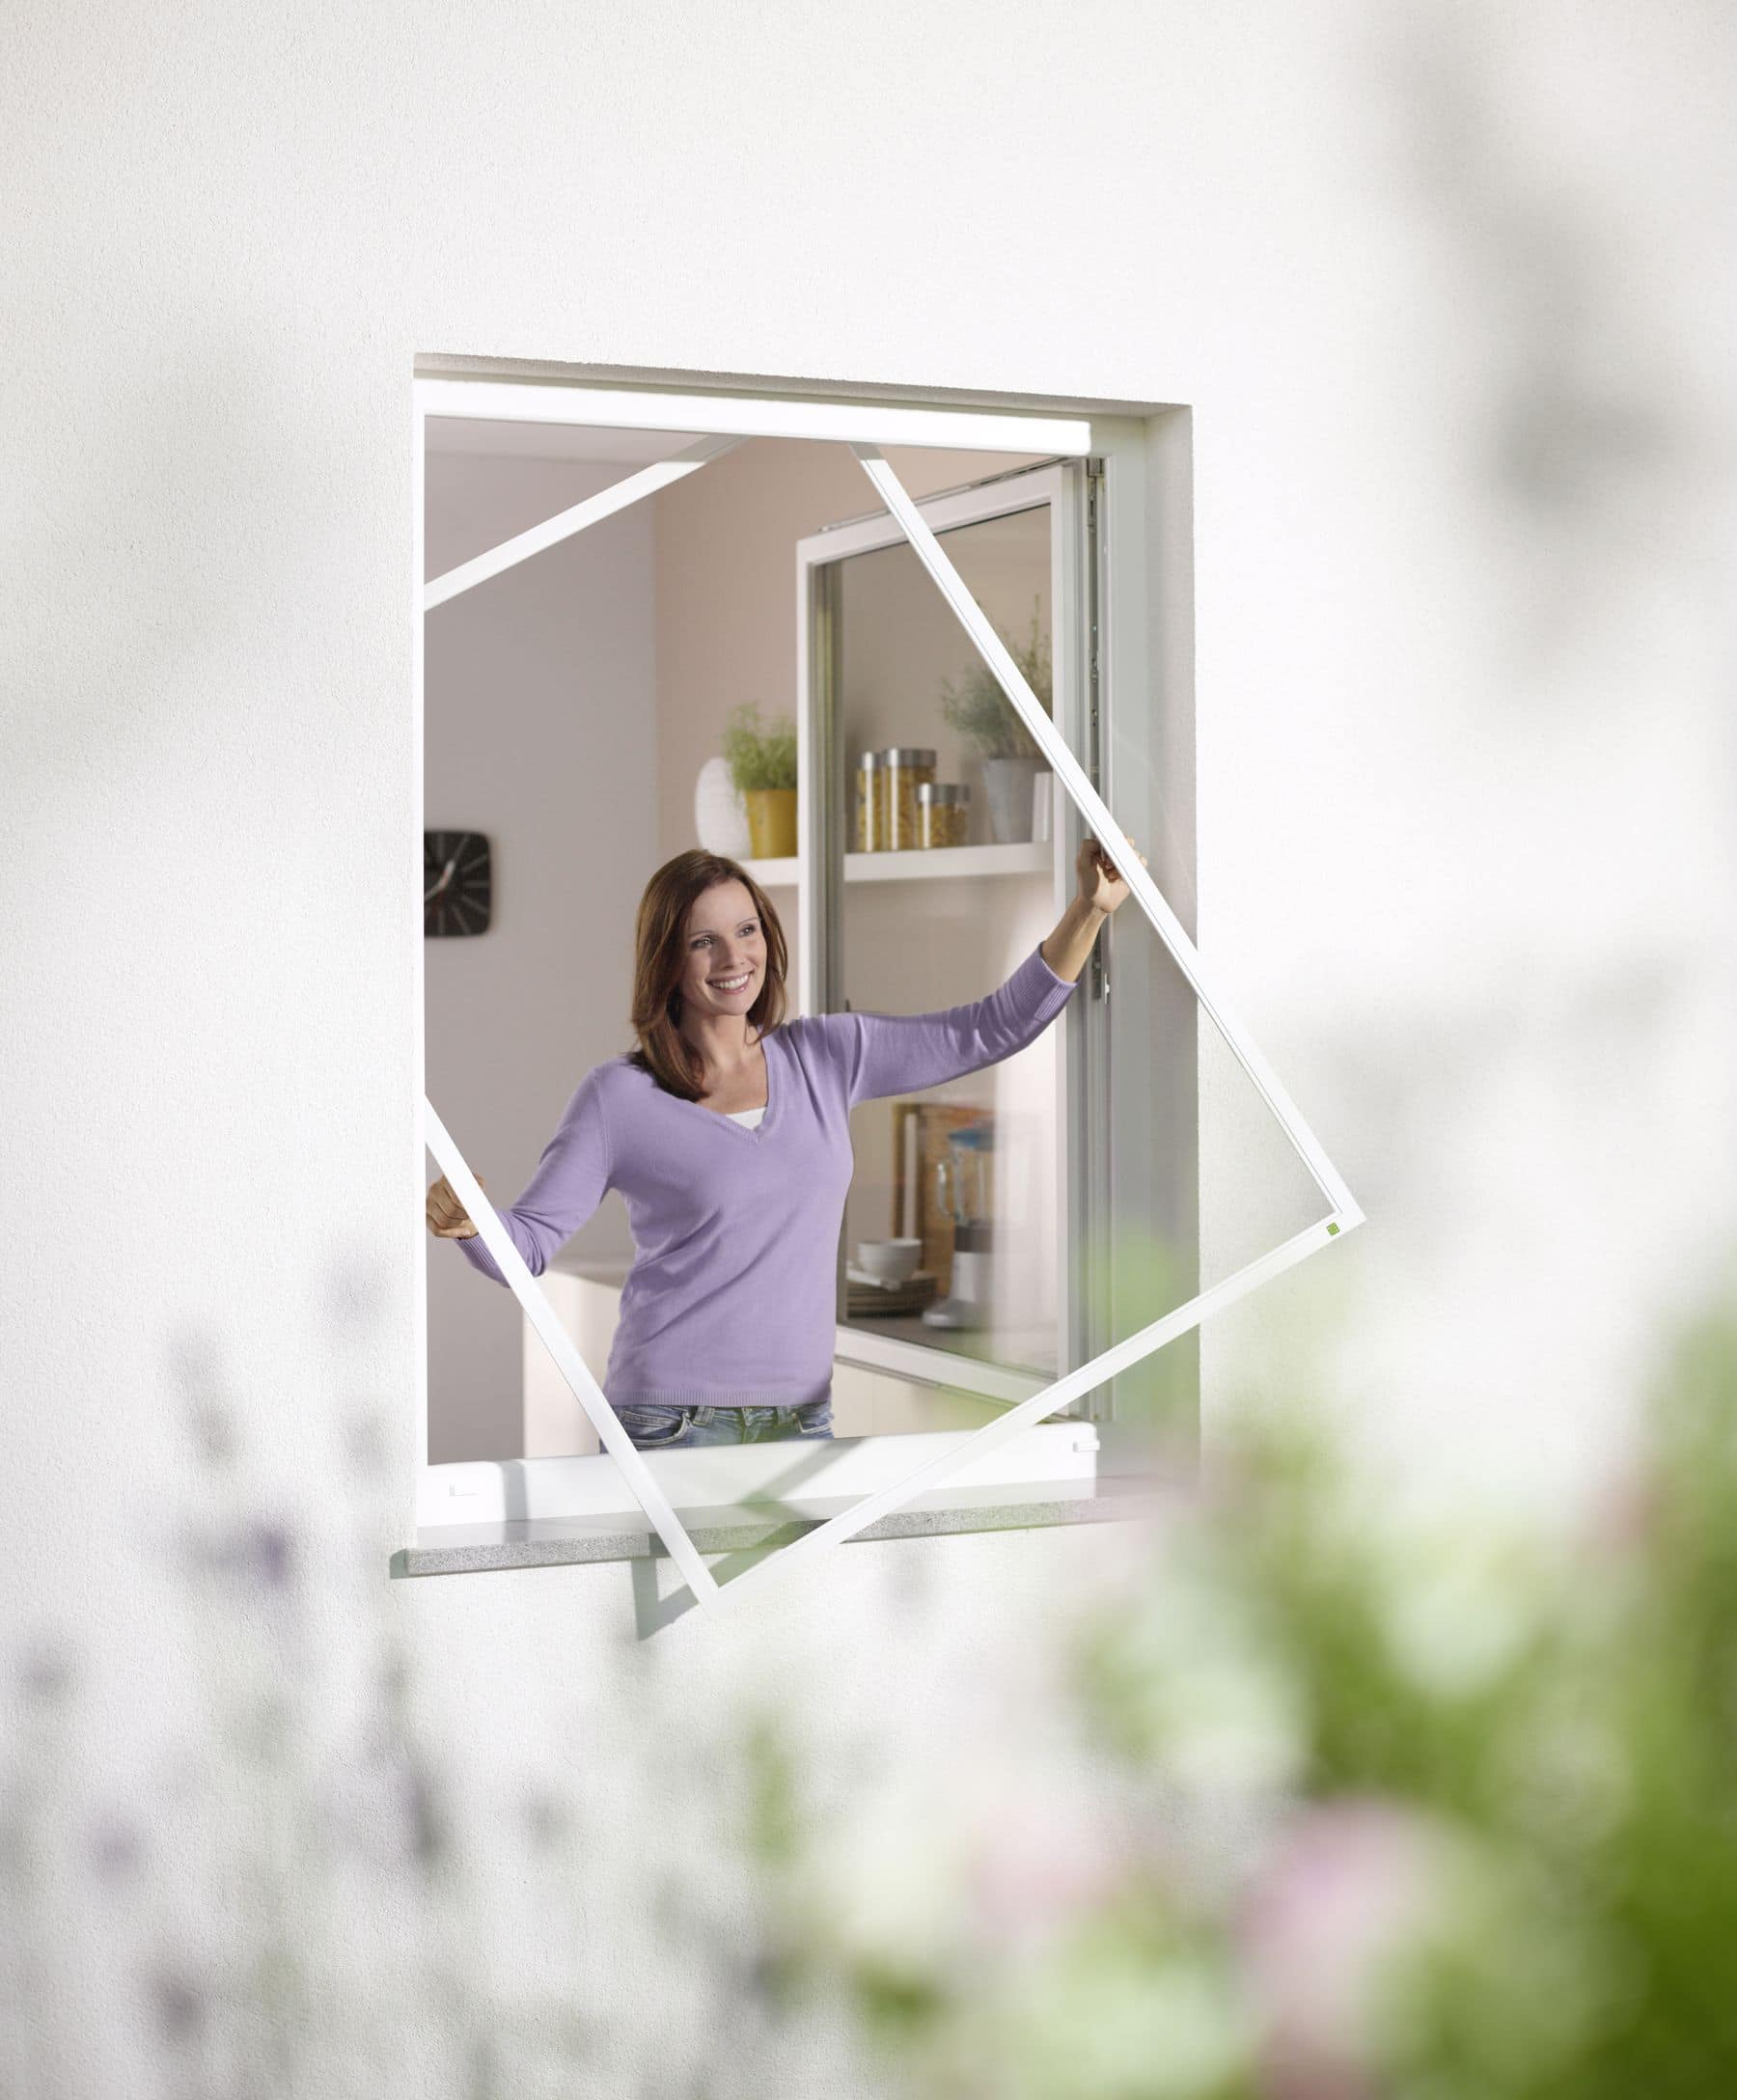 Eine lächelnde Frau installiert von der Innenseite eines Raumes aus einen Insektenschutz an einem offenen Fenster.